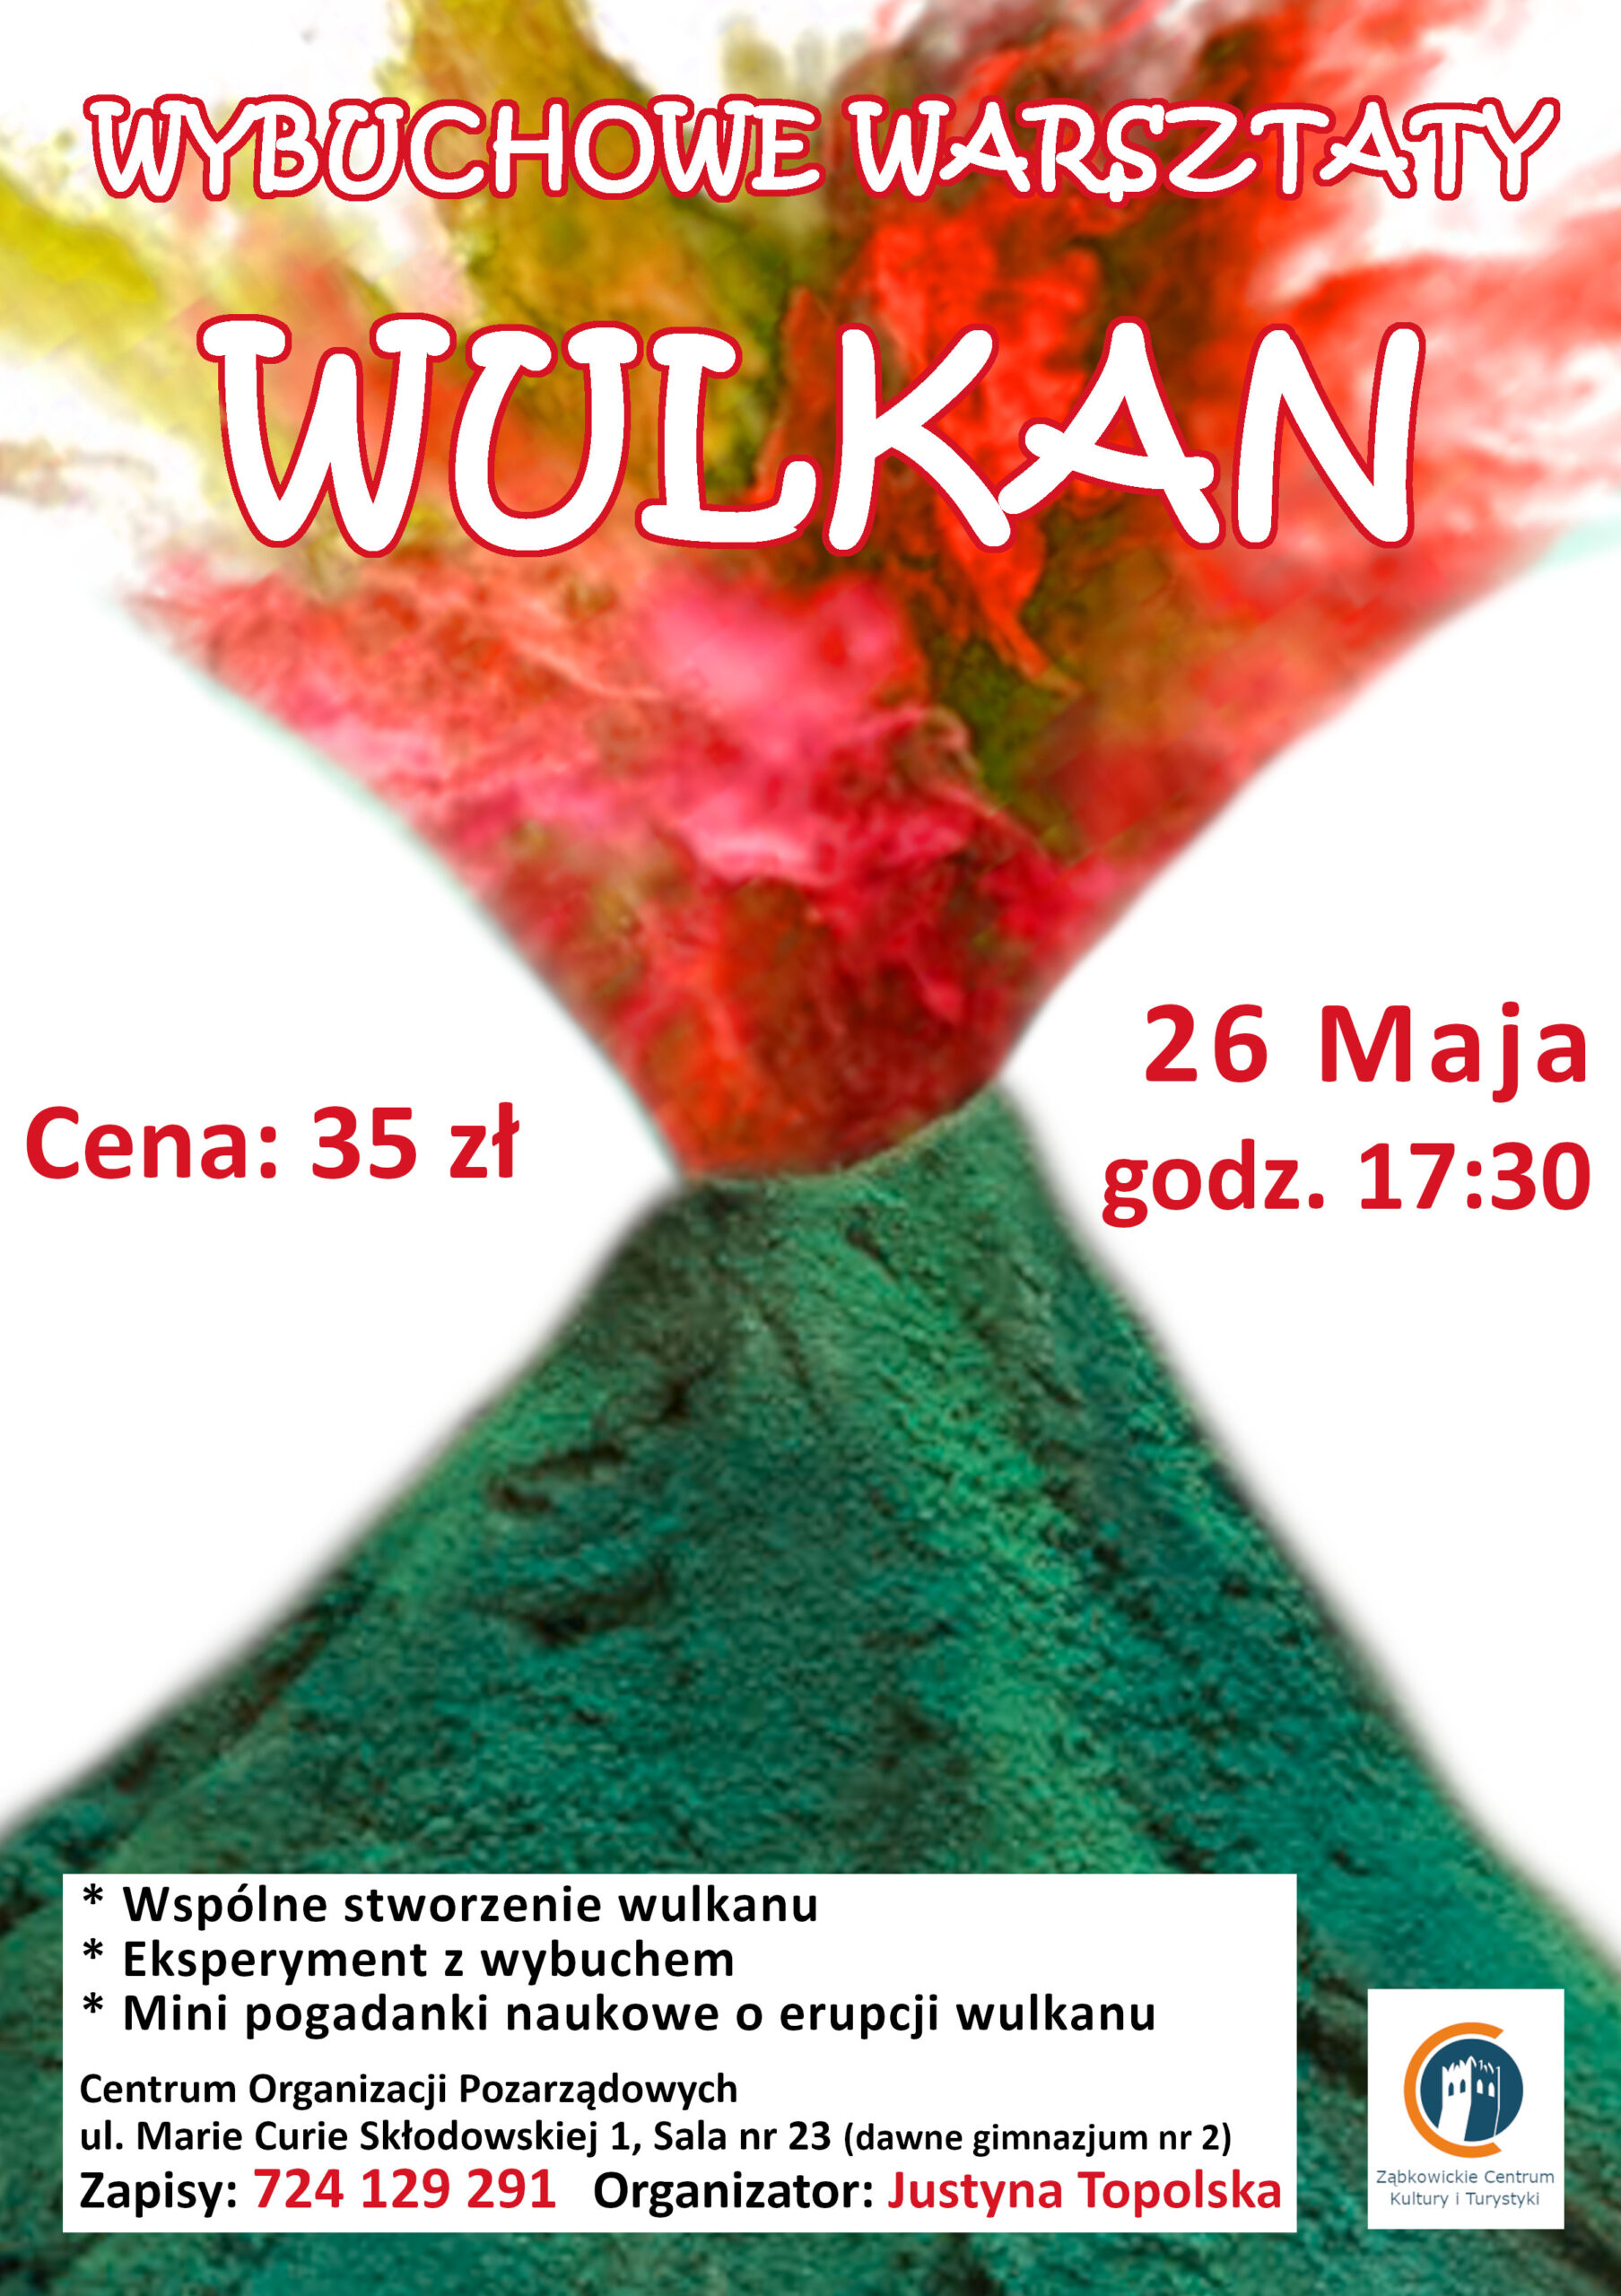 plakat wybuchowe warsztaty wulkan 26 maja 2022 roku godzina 17:30 cena 35 złoty